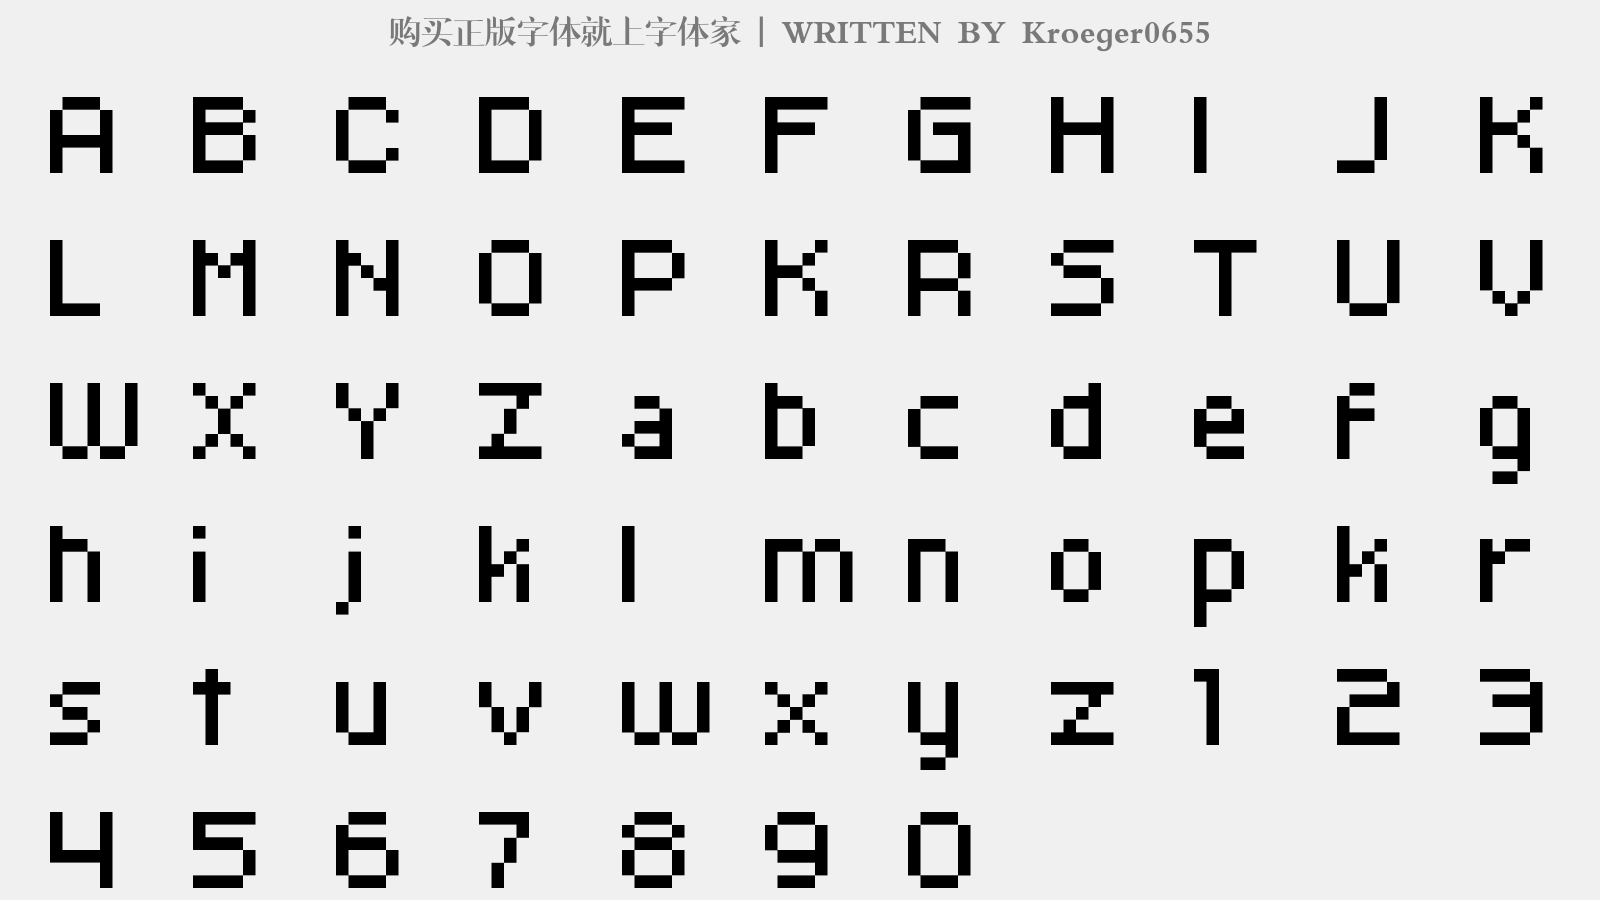 Kroeger0655 - 大写字母/小写字母/数字